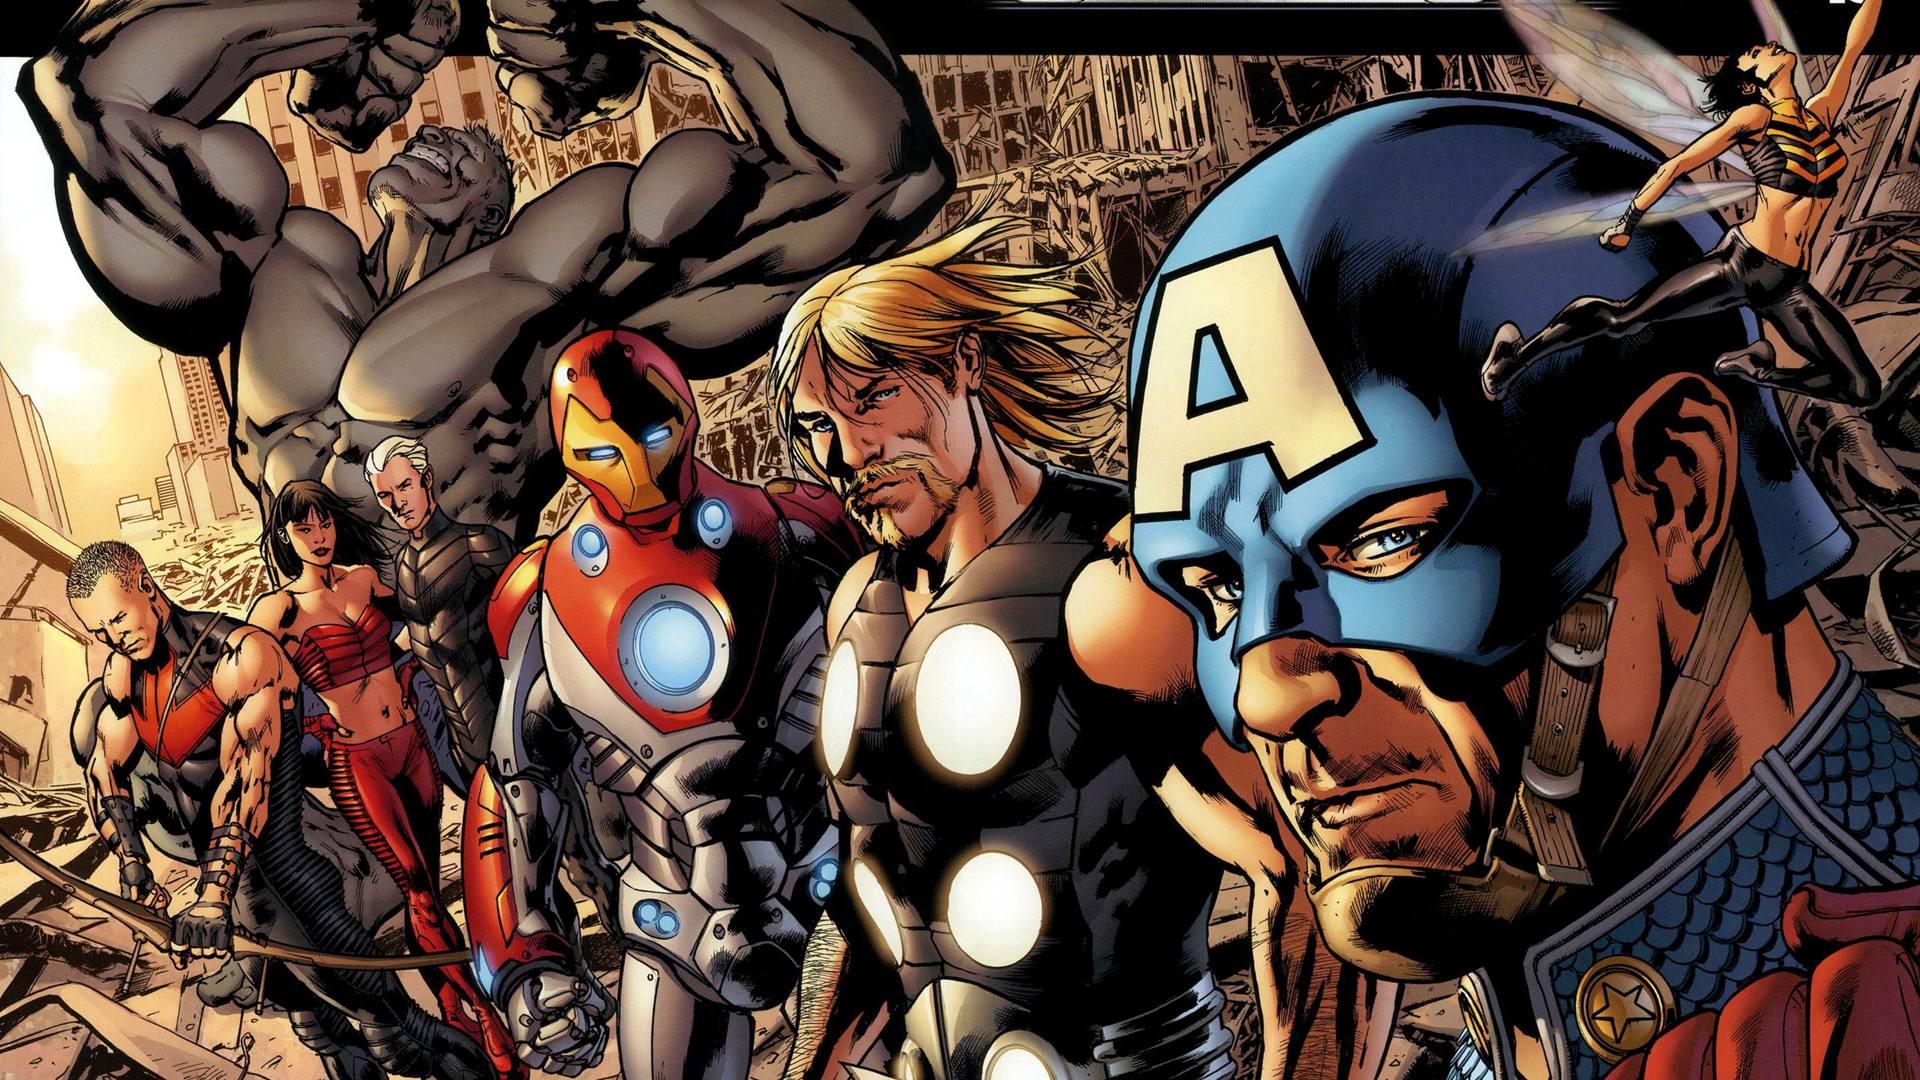 Халк ( комический персонаж ), Железный Человек, комиксы, Тор, Капитан Америка, Марвел комиксы, Hawkeye, Оса, Алая Ведьма, Ultimates - обои на рабочий стол